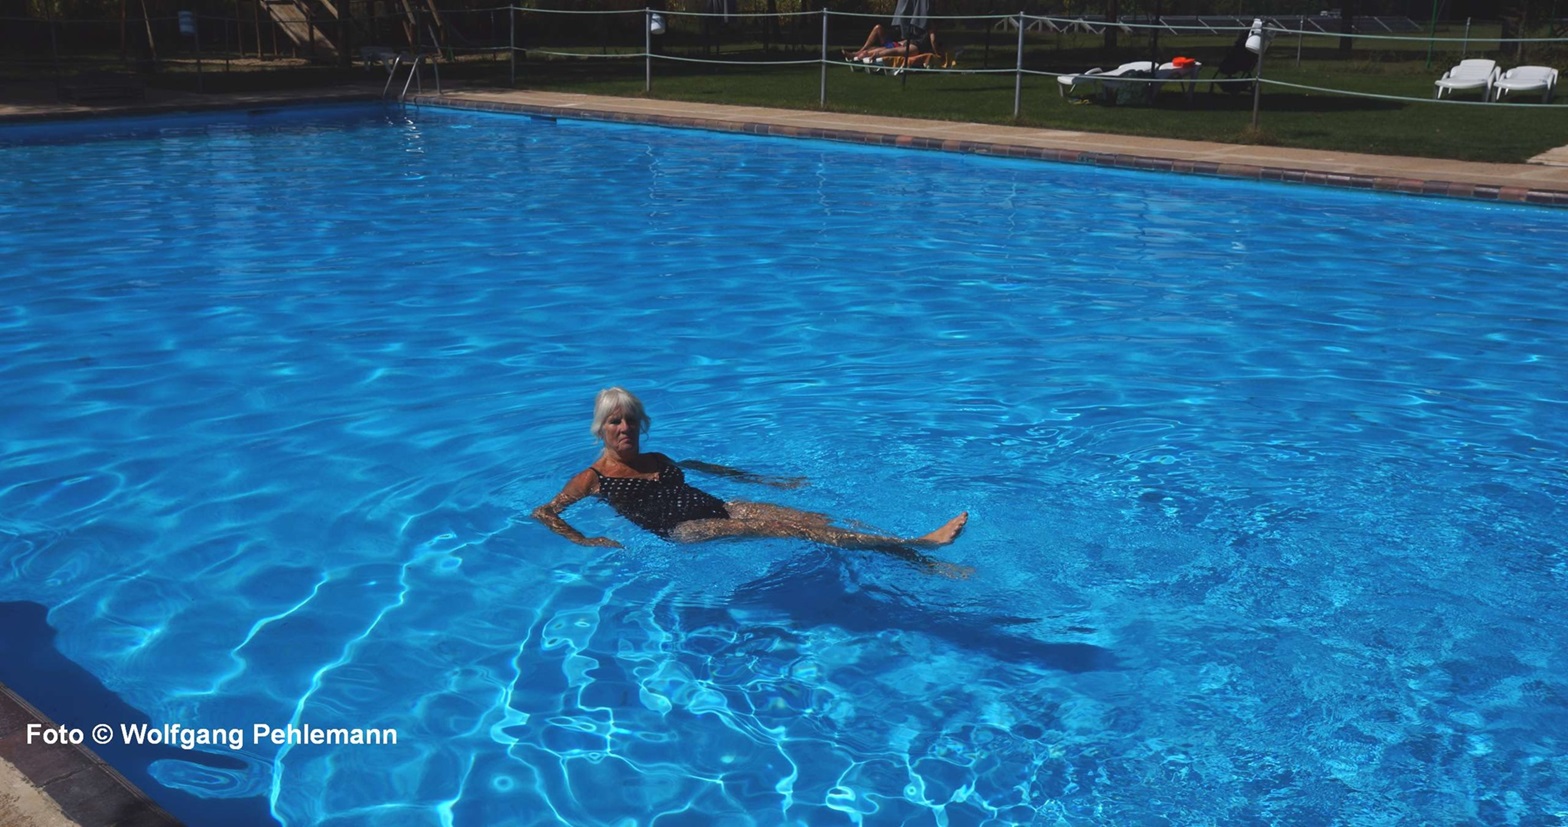 Una piscina entera para una sola persona - CP El Astral in Tordesillas Spanien - Foto © Wolfgang Pehlemann DSC00674